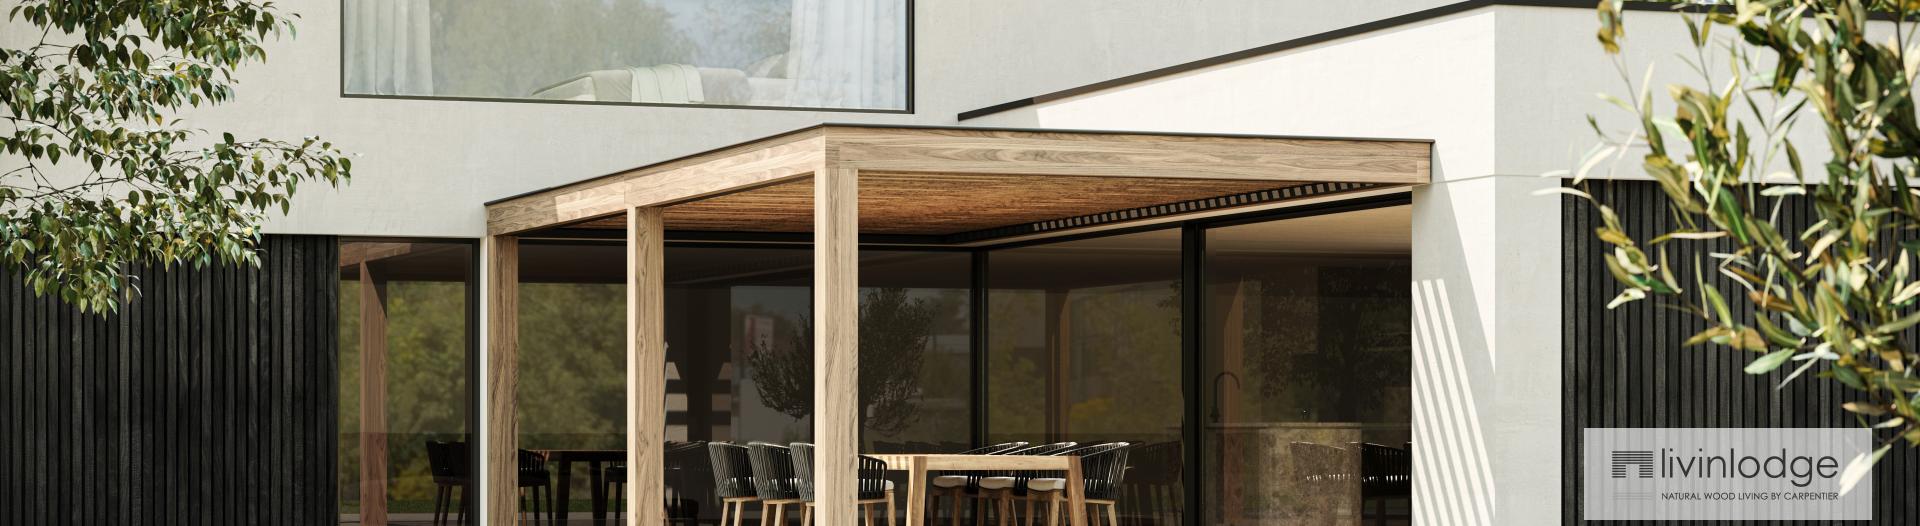 Minimalistisches Haus mit angebauter Terrassenüberdachung aus Holz